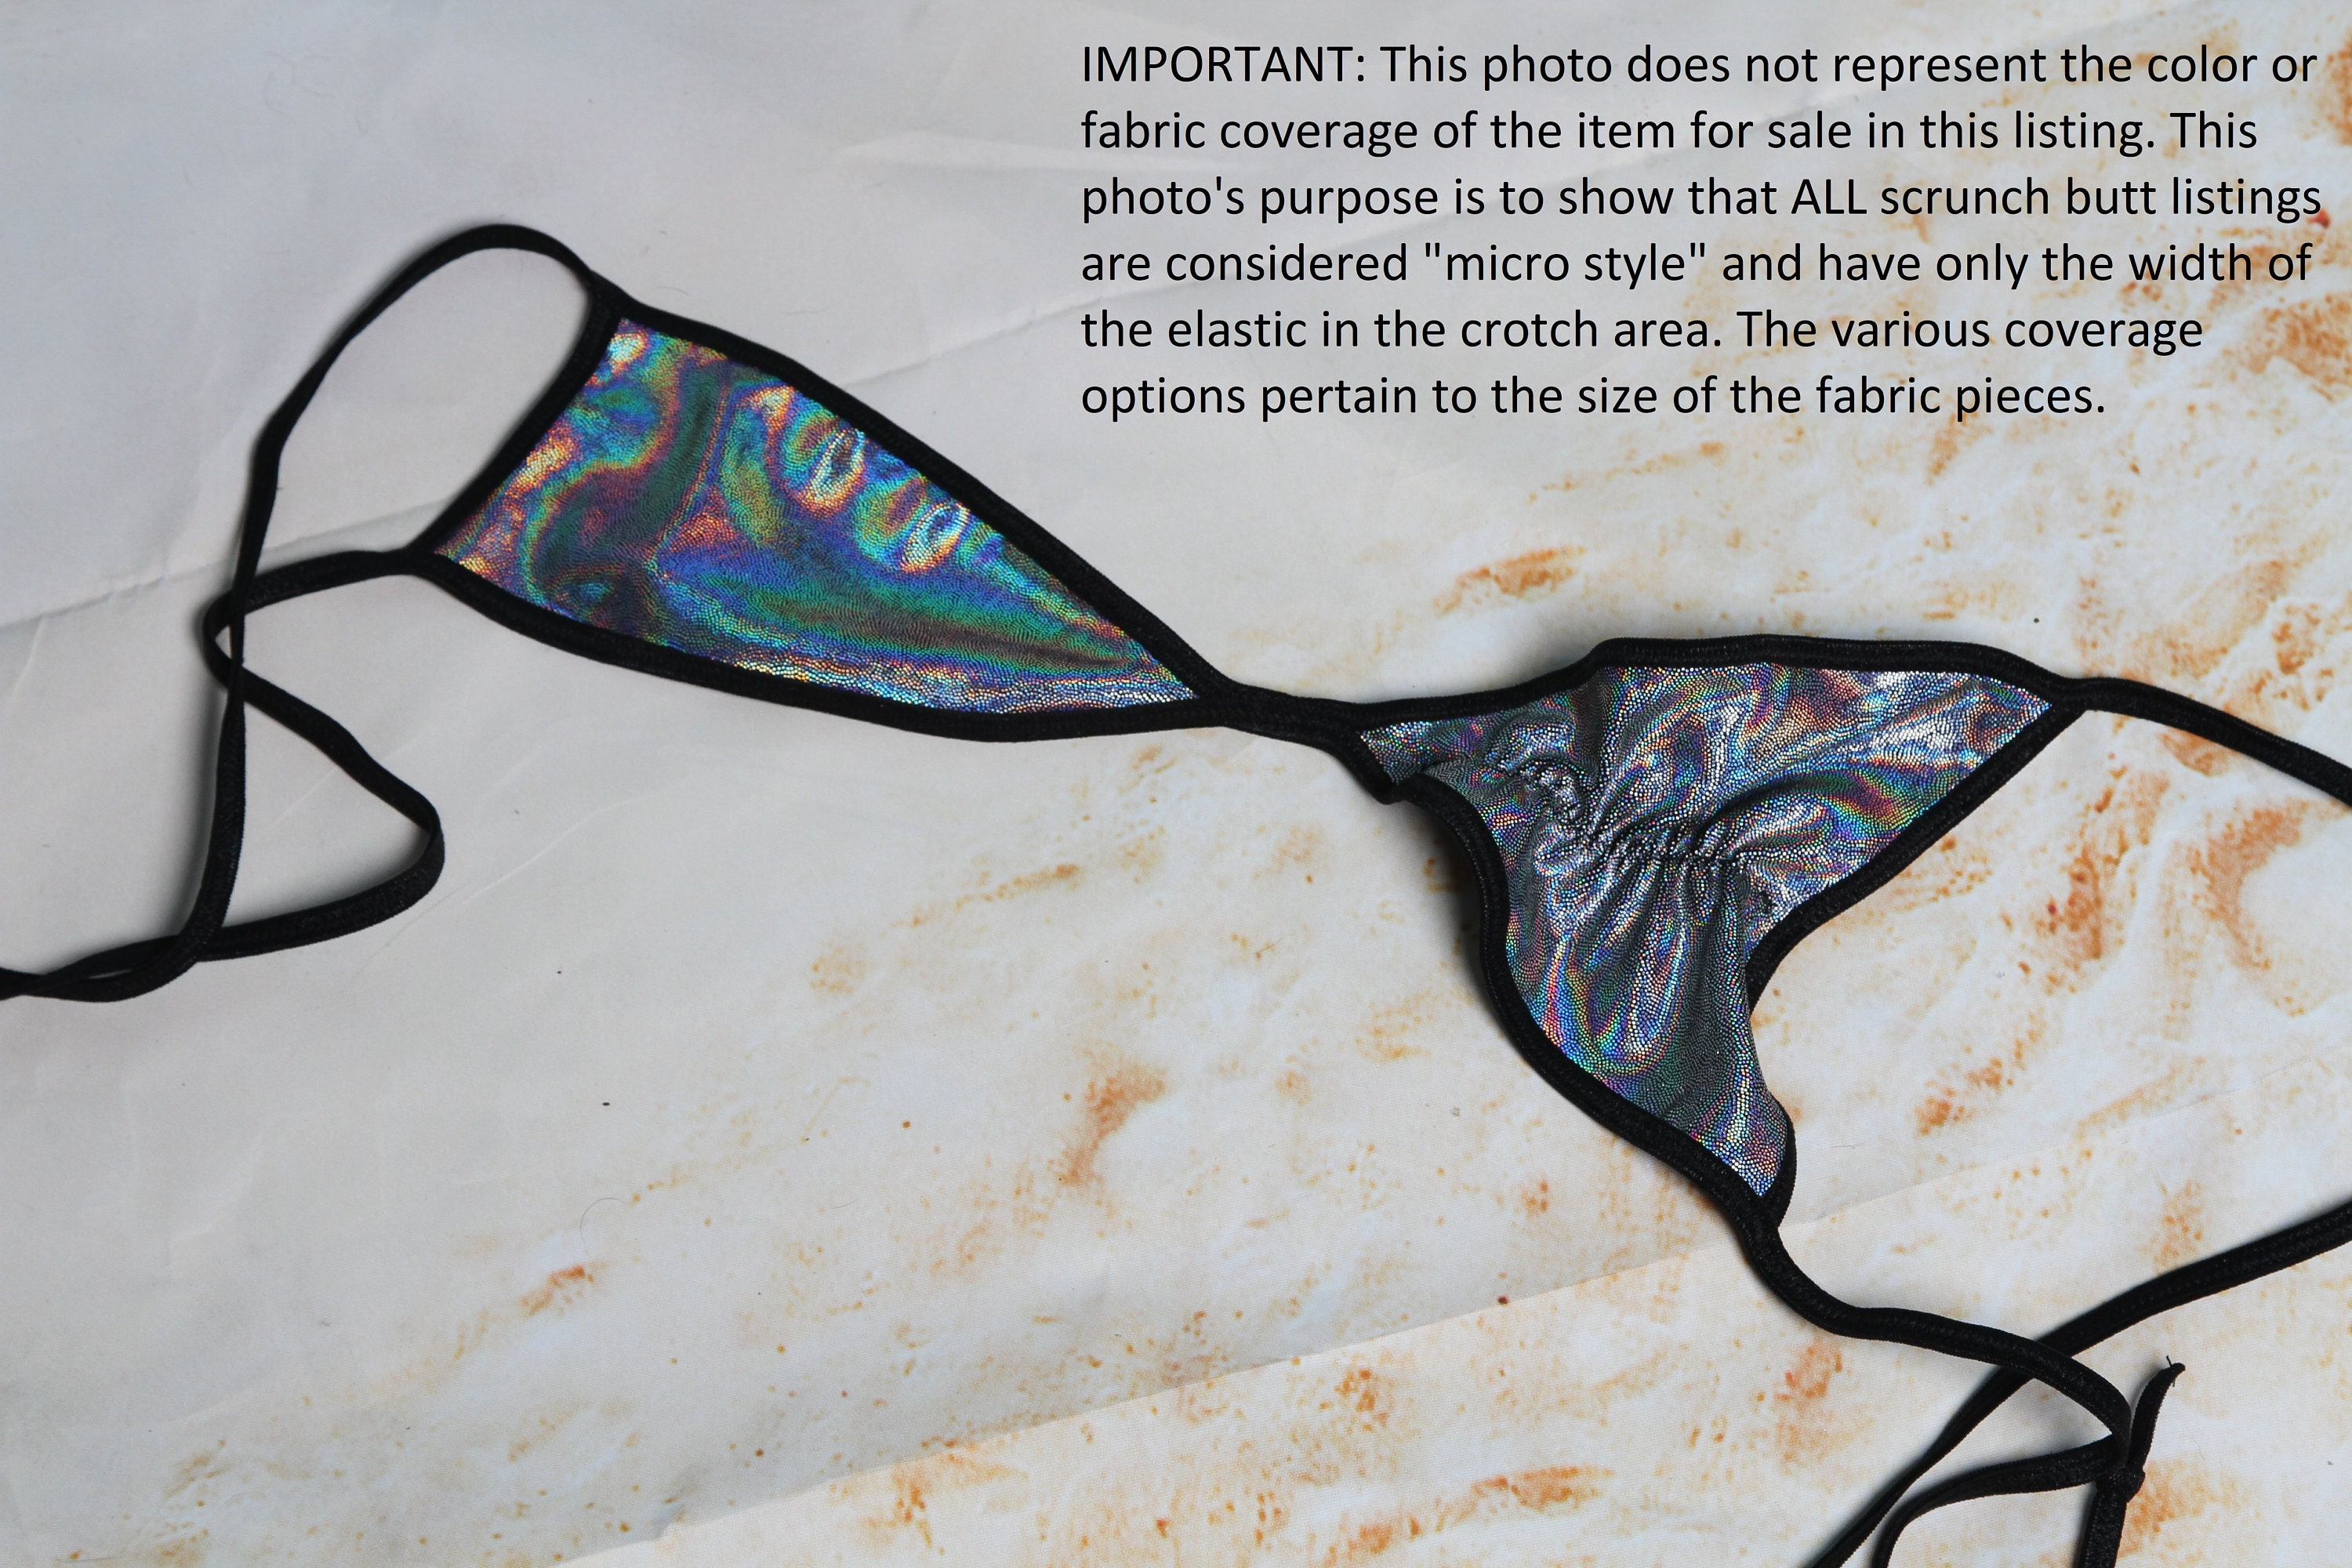 Medium-Coverage-Bikinislip mit kleinem geometrischem Print